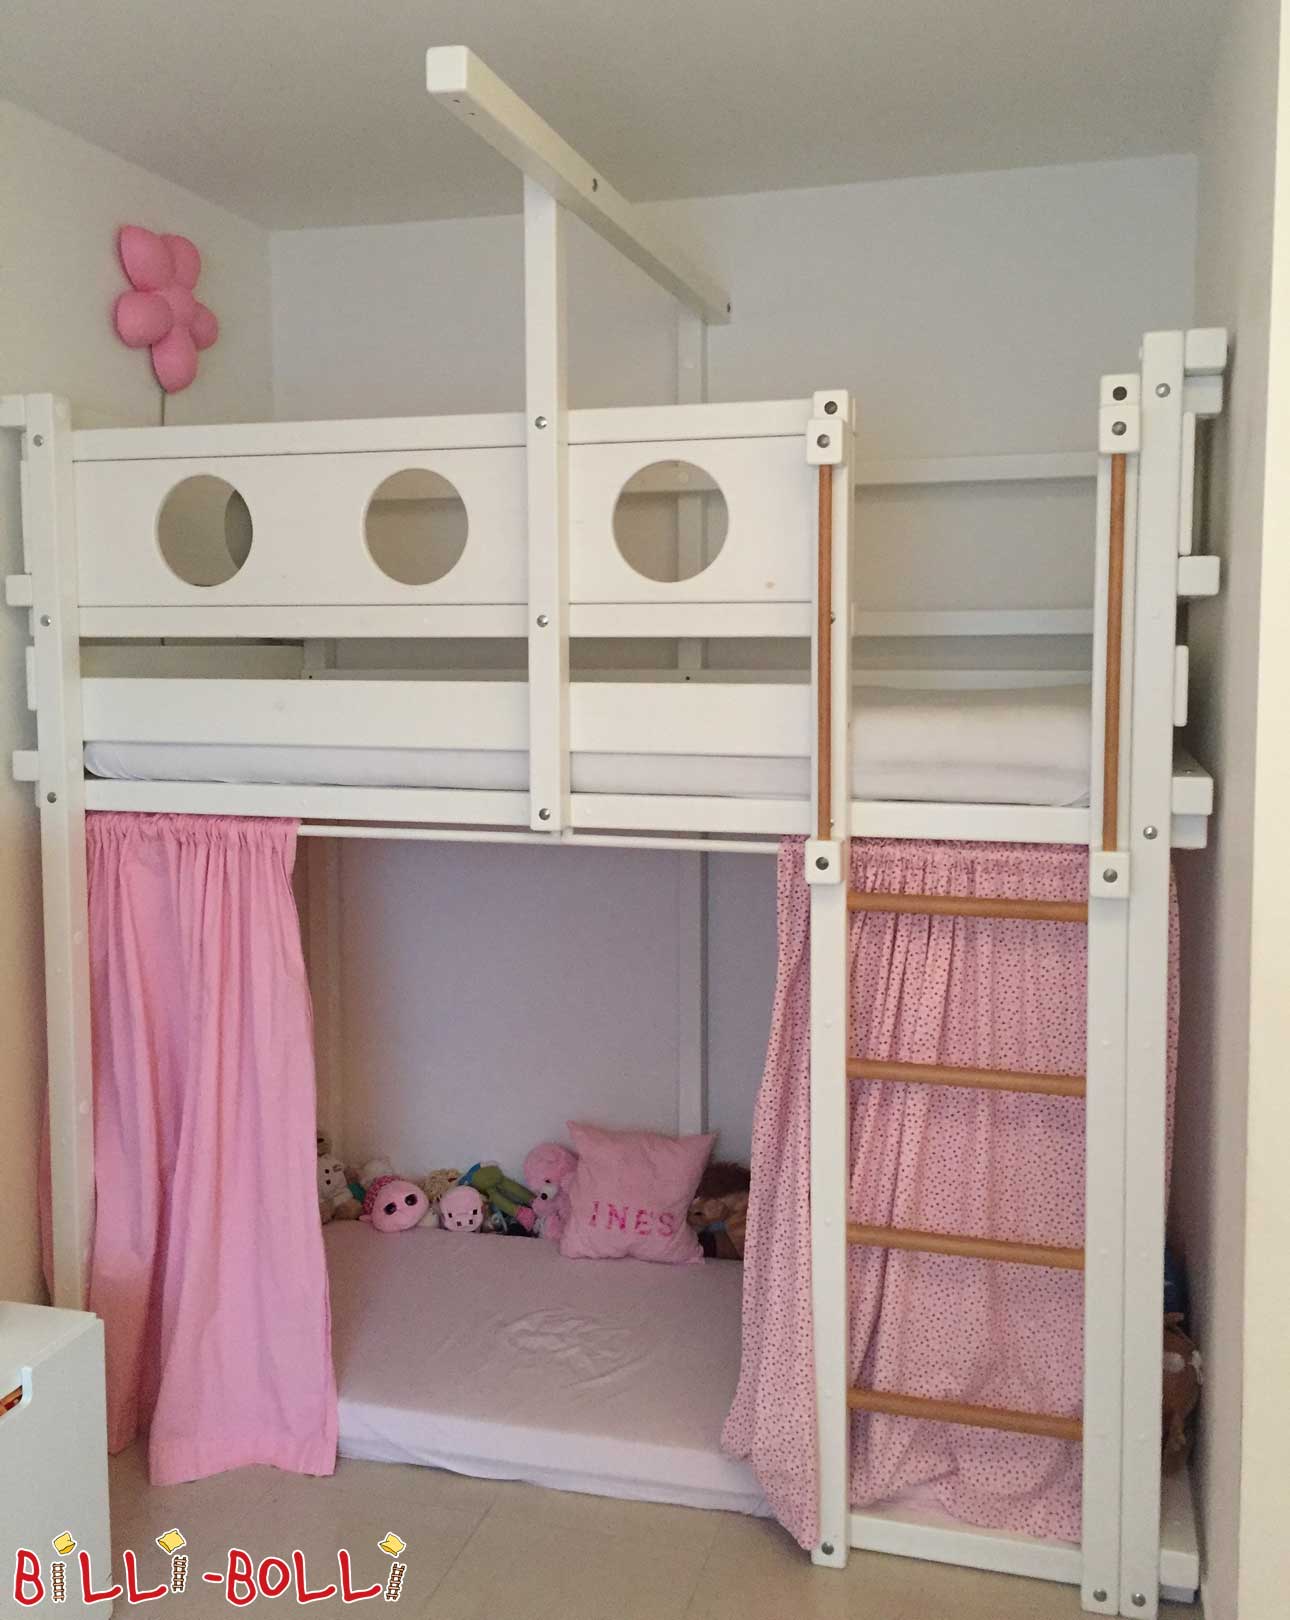 मचान बिस्तर जो बच्चे के साथ बढ़ता है - सफेद रंग में एक सपना (कोटि: मचान बिस्तर का इस्तेमाल किया)